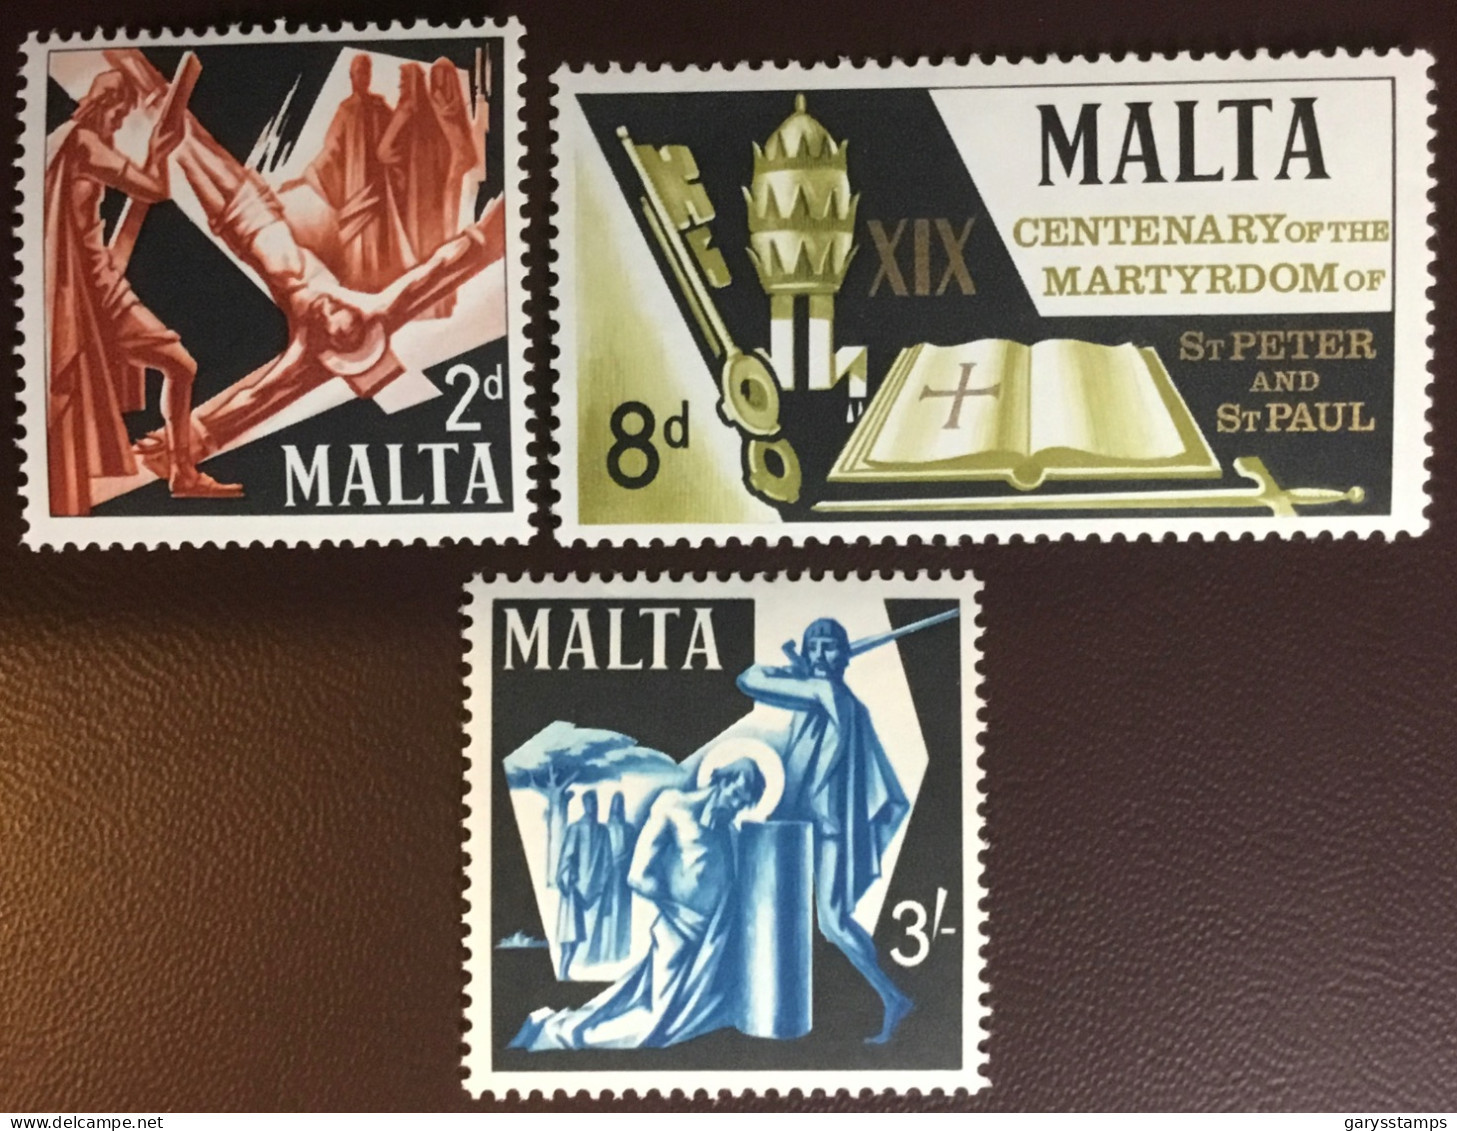 Malta 1967 Martyrdom Centenary MNH - Malta